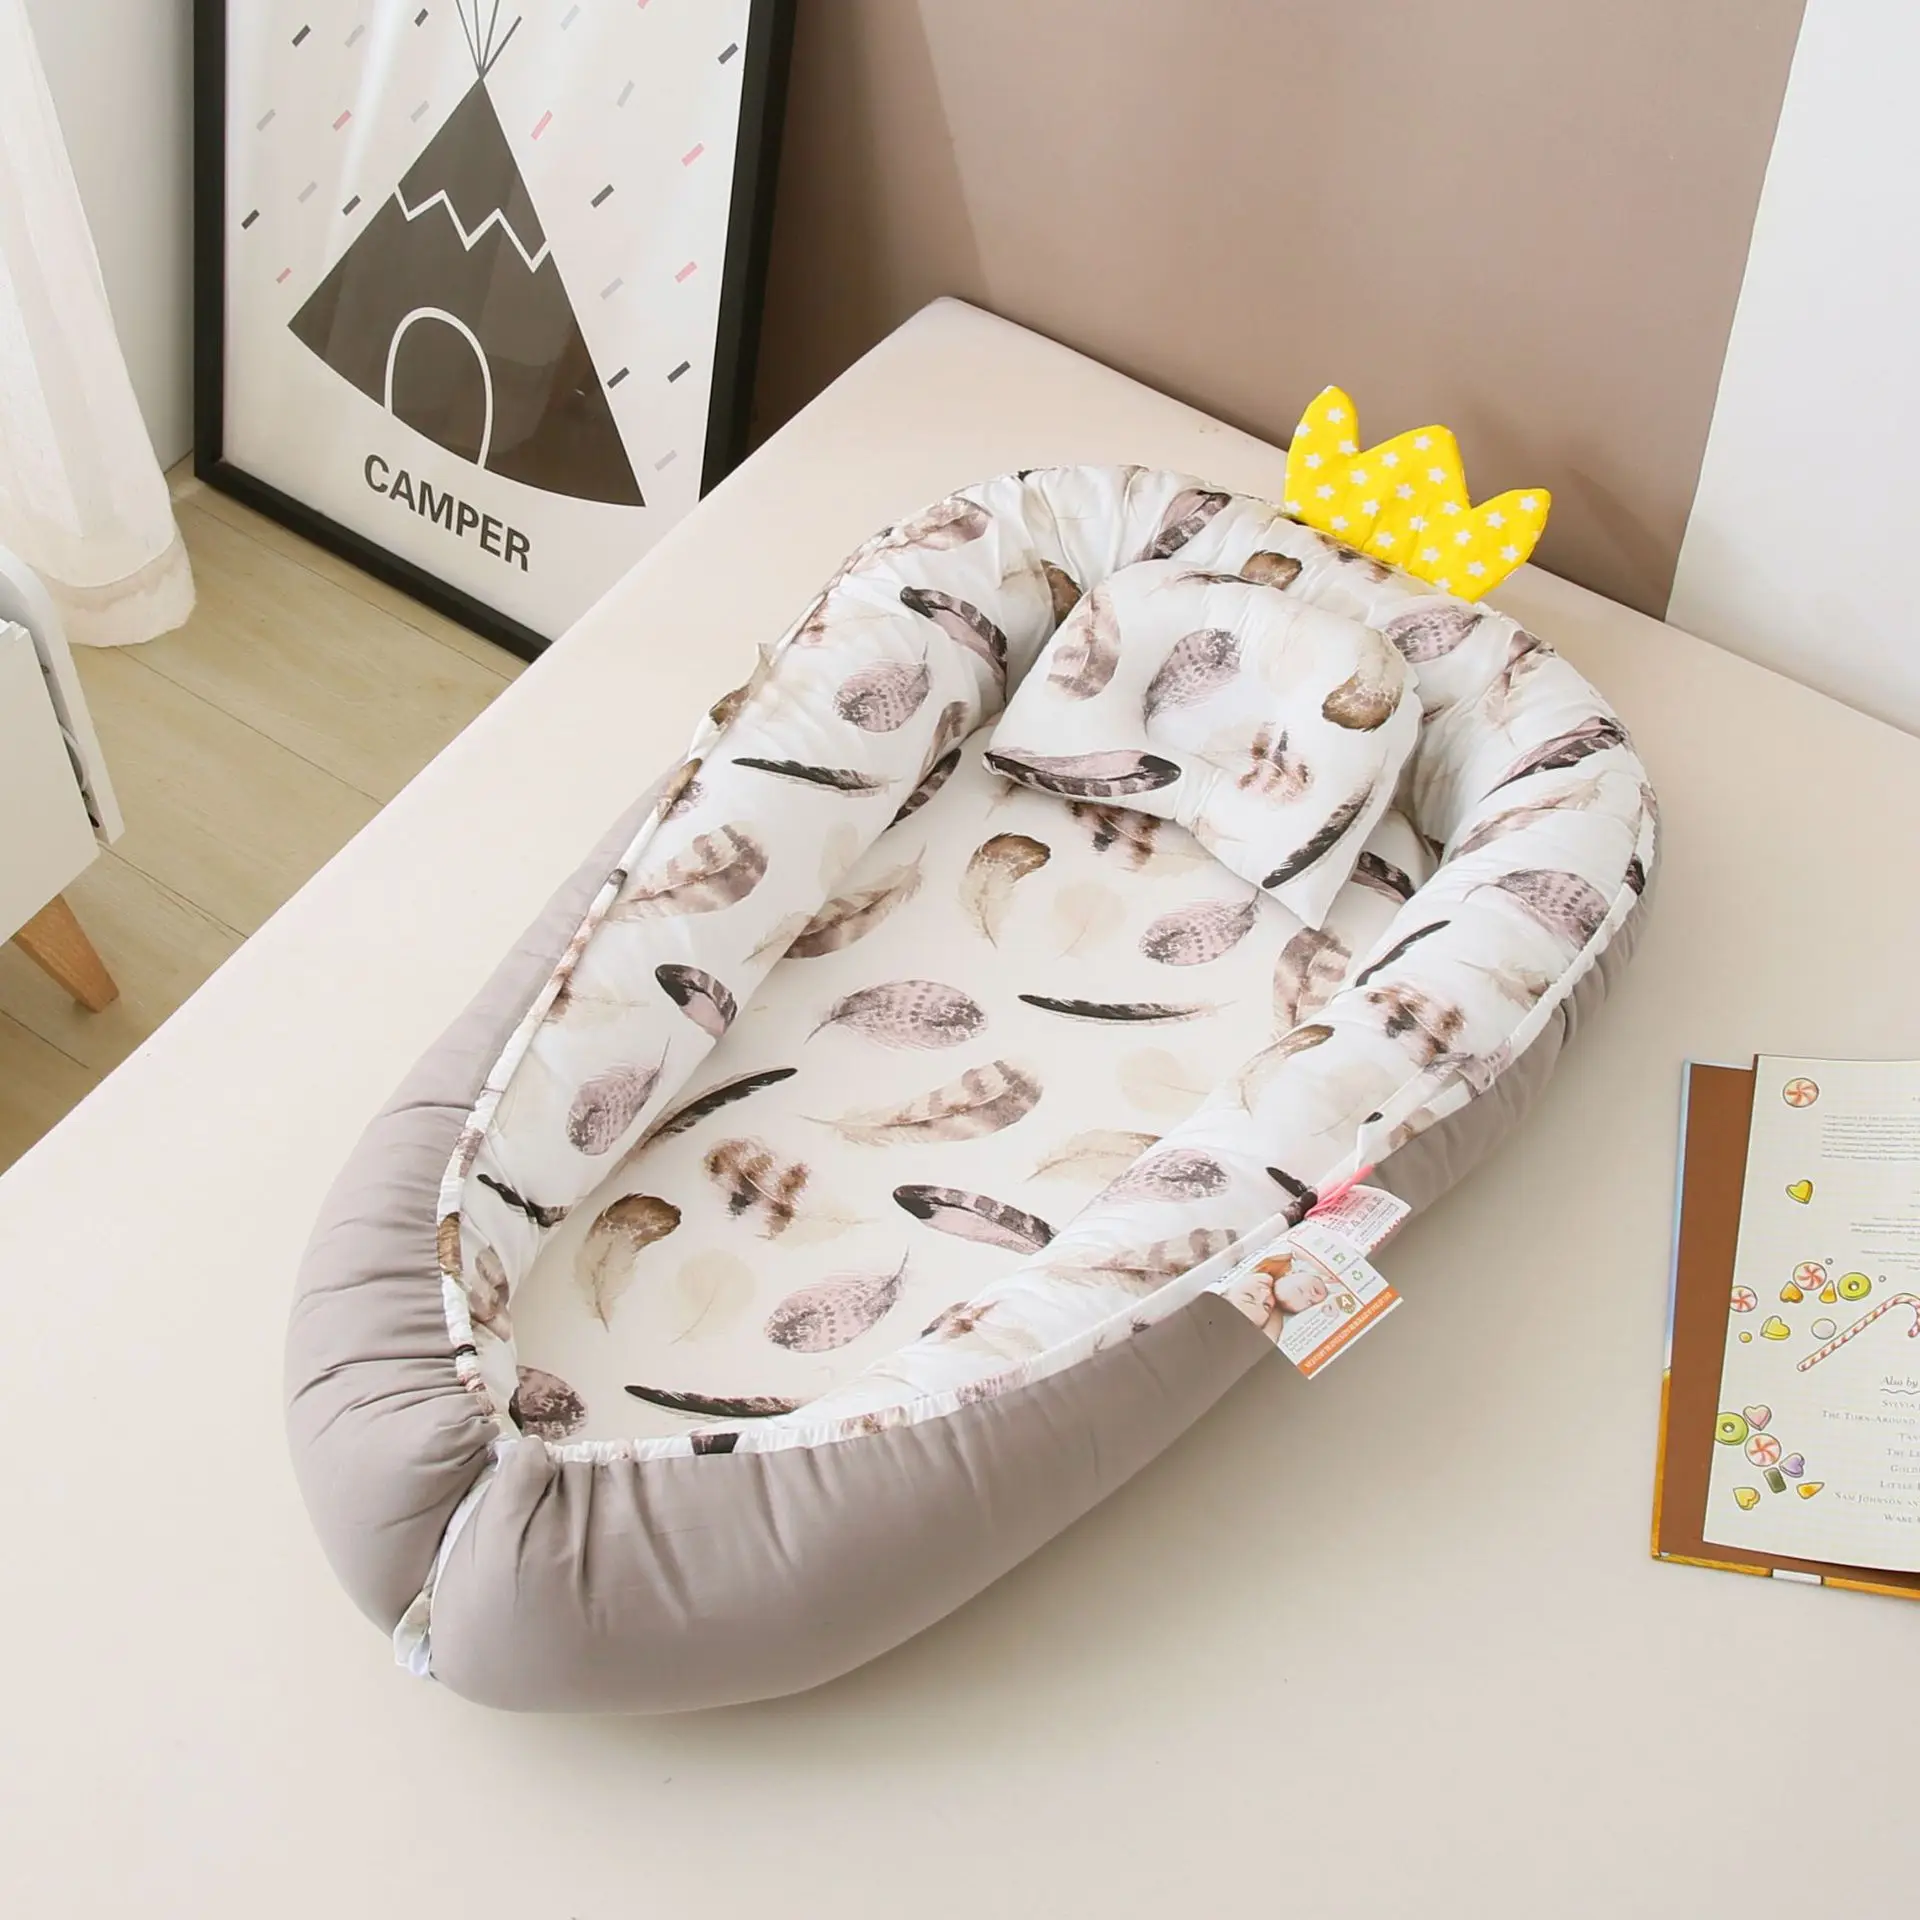 2021 новая детская кроватка портативная детская кровать складное детское кресло съемная и моющаяся кровать для путешествий детская мебель д...